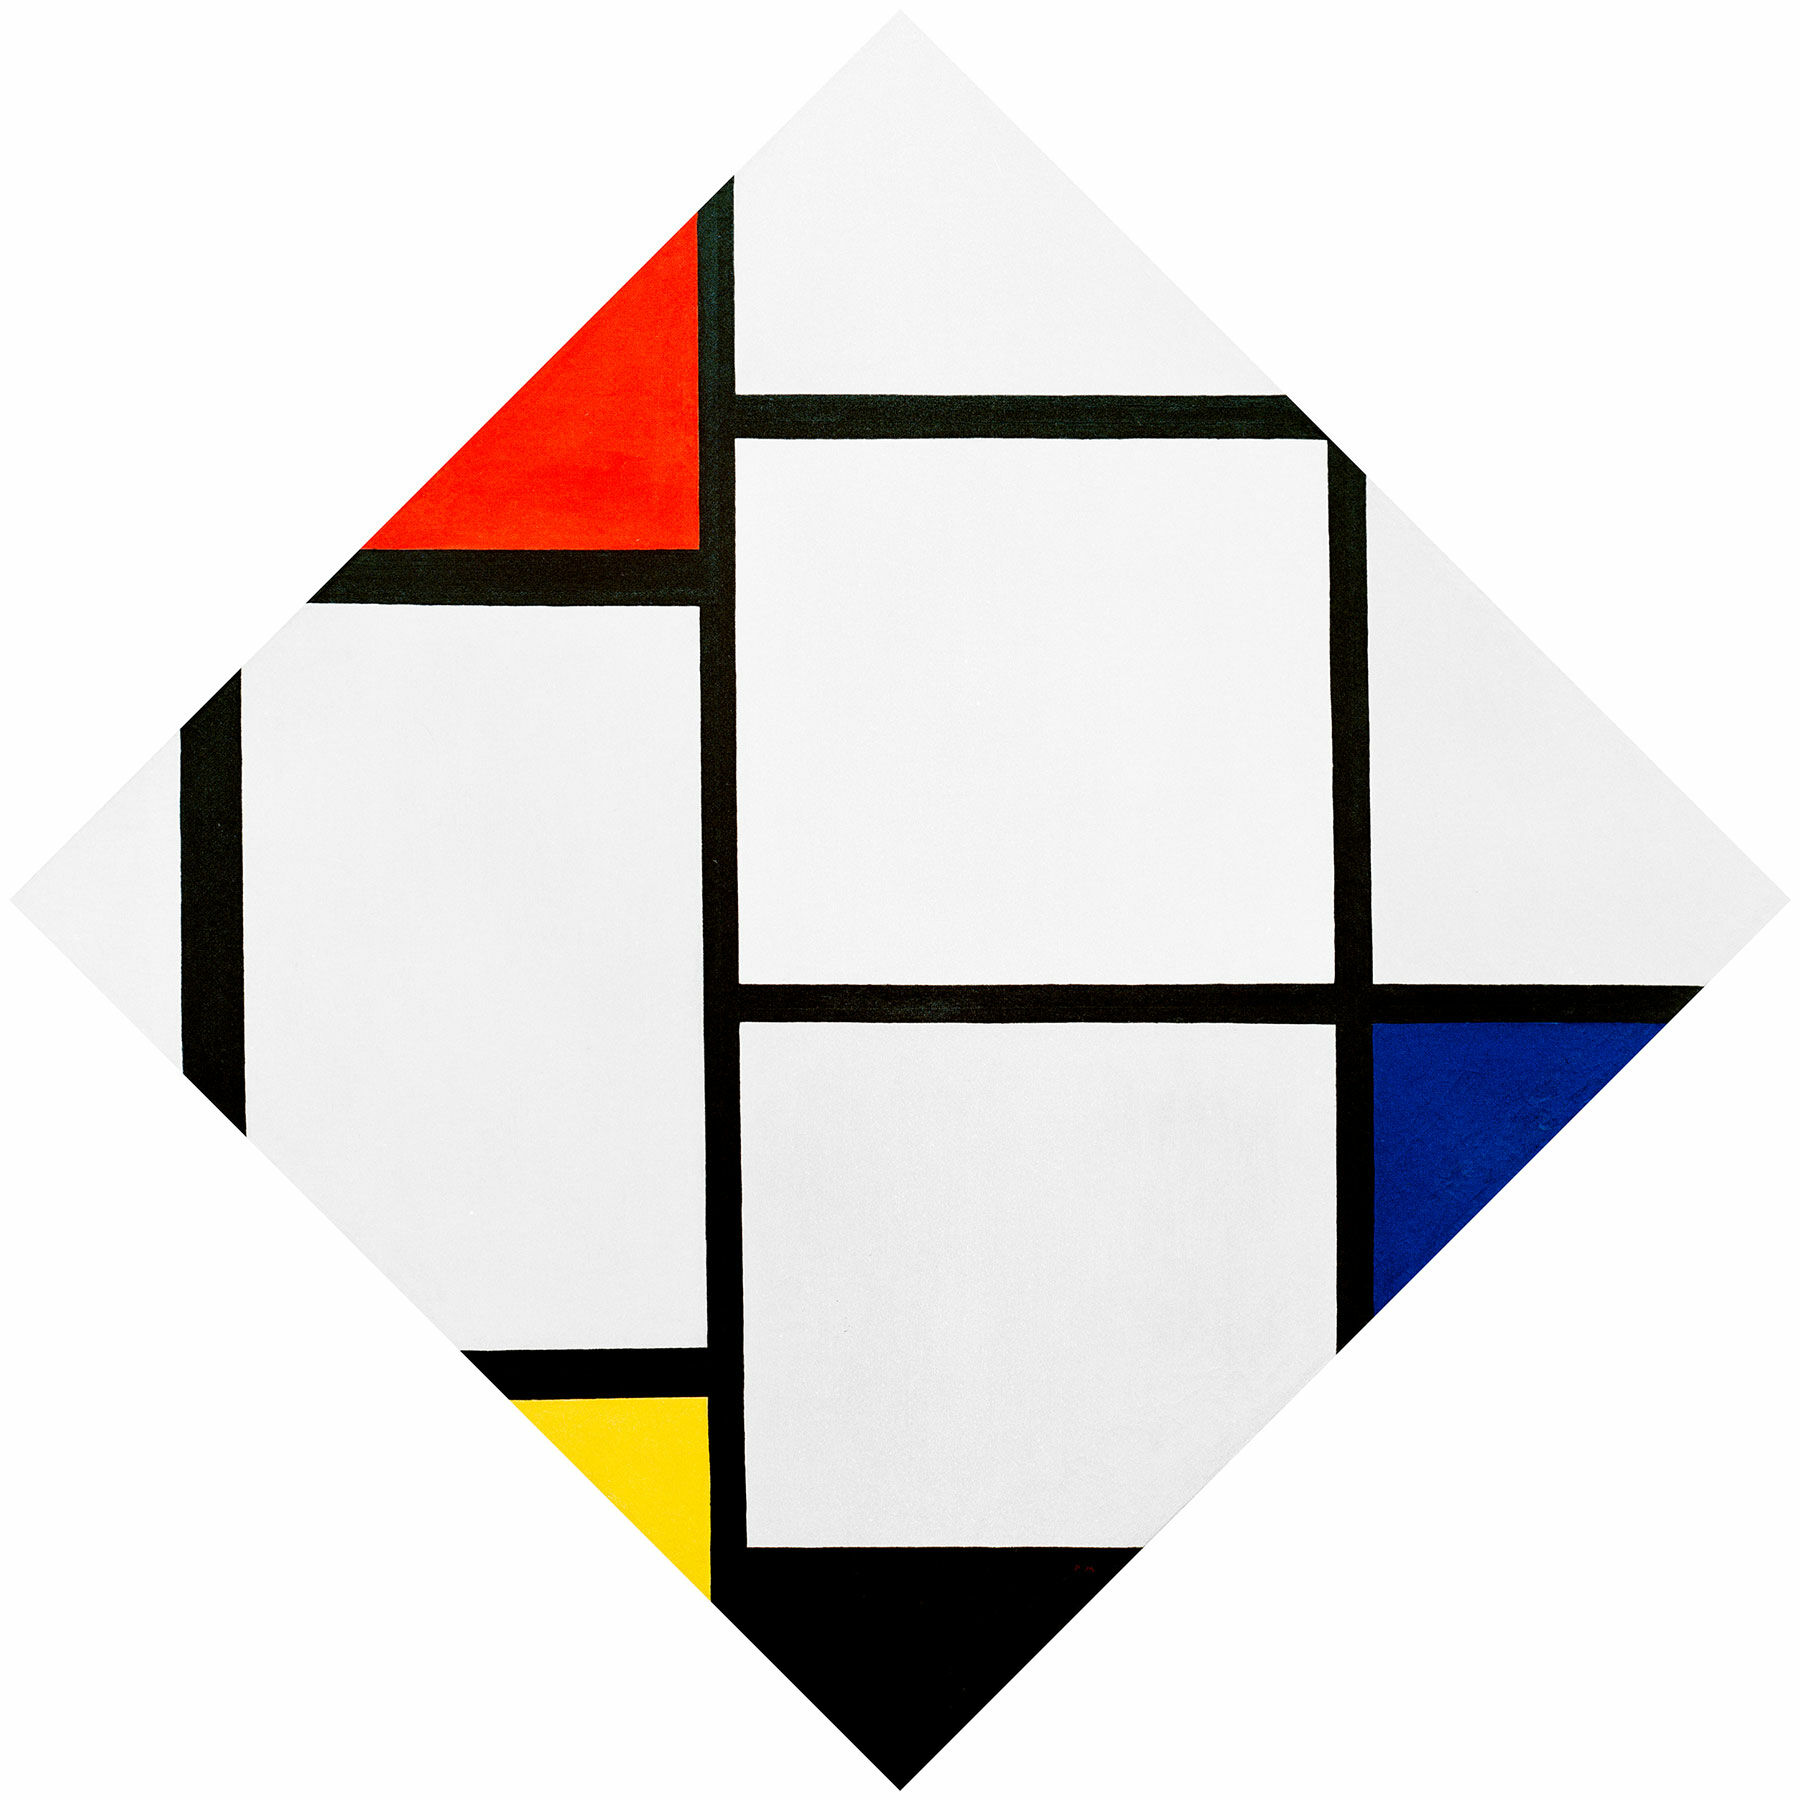 Billede "Tableau nr. IV" von Piet Mondrian